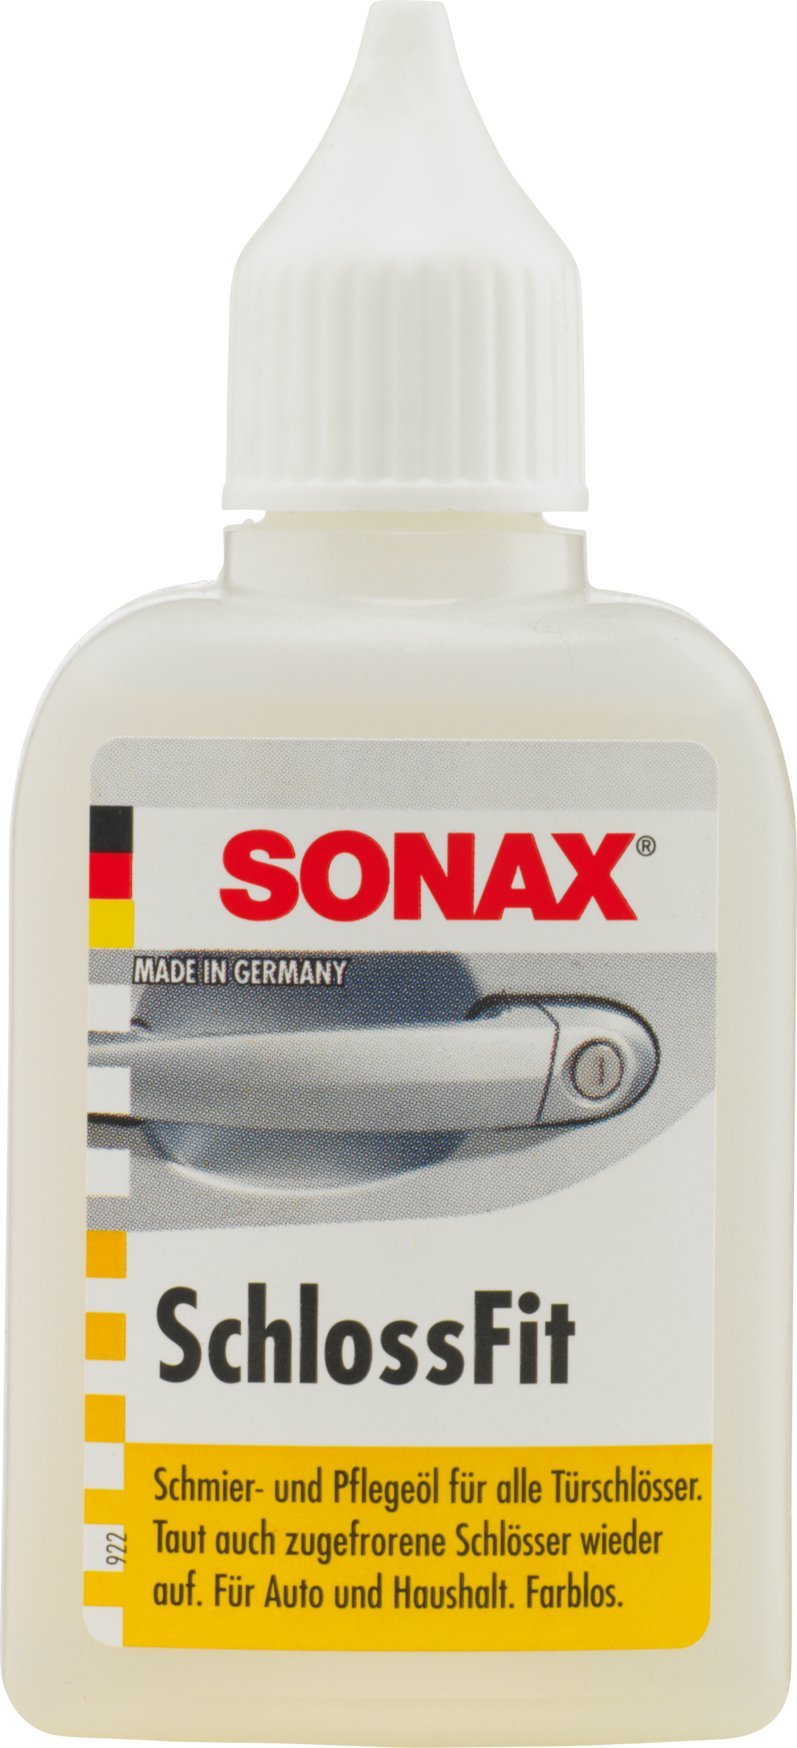 SONAX SchlossFit Thekendisplay (20 ml) pflegt, schmiert und schützt Türschlösser vor Rost und Feuchtigkeit – ohne zu verkleben | Art-Nr. 03751000 von SONAX